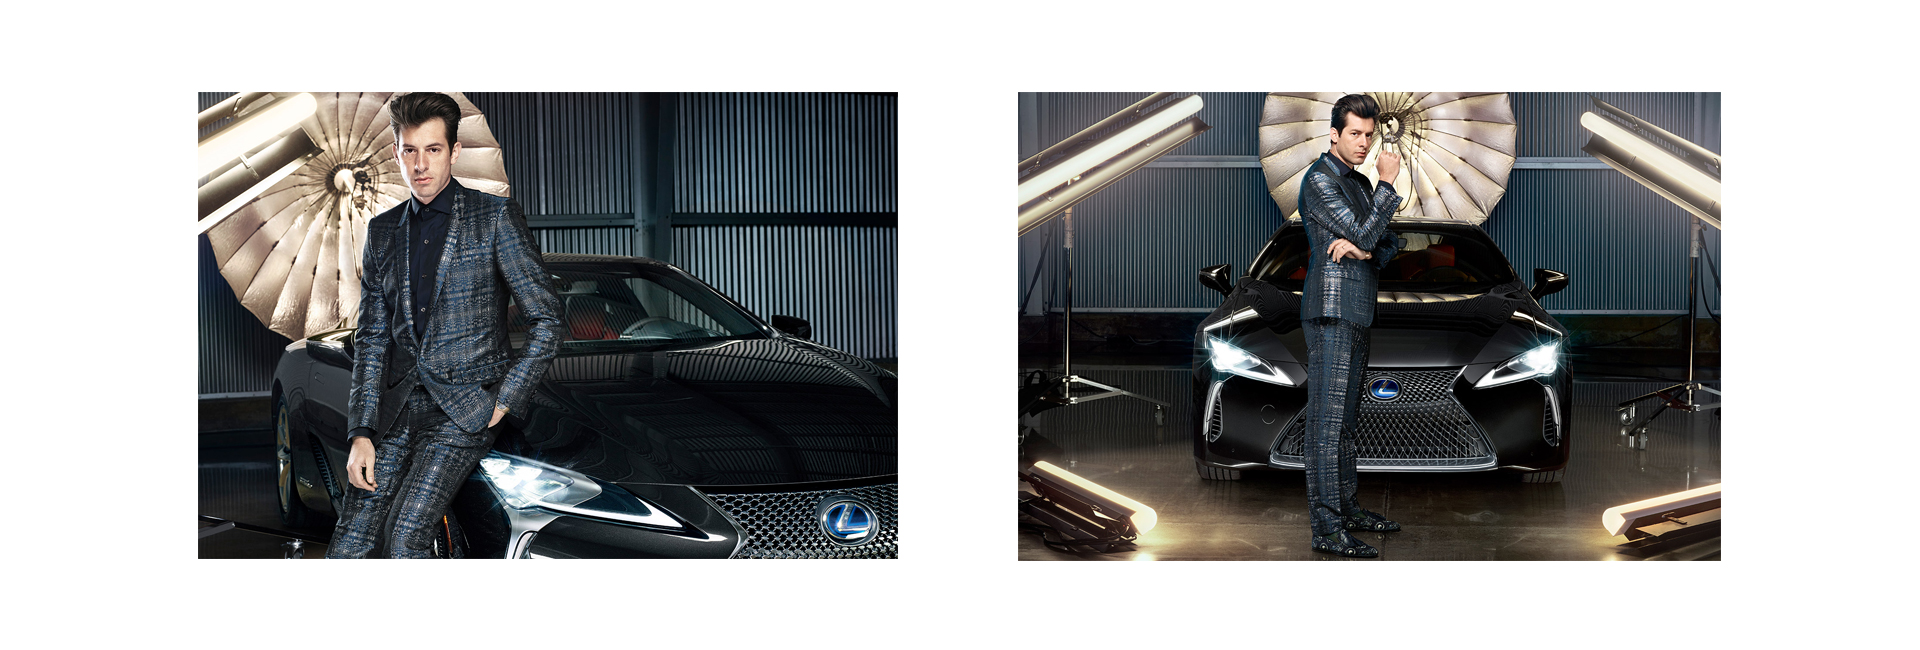 Lexus и Марк Ронсон: что задумали автомобильный бренд и британский продюсер (фото 1)